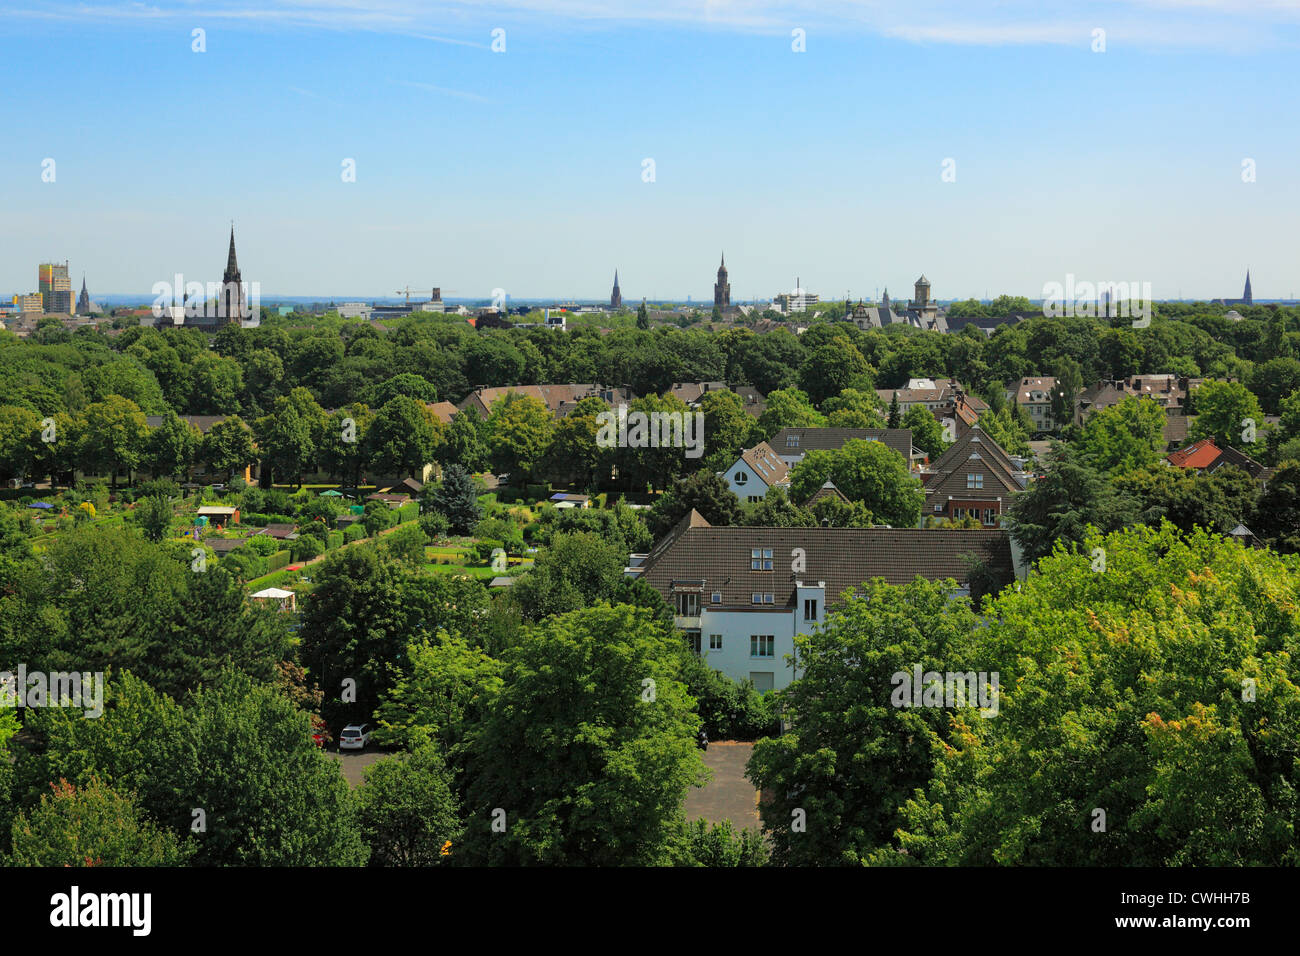 Blick vom Stadthaus auf das Panorama von Moers, Niederrhein, Nordrhein-Westfalen Banque D'Images